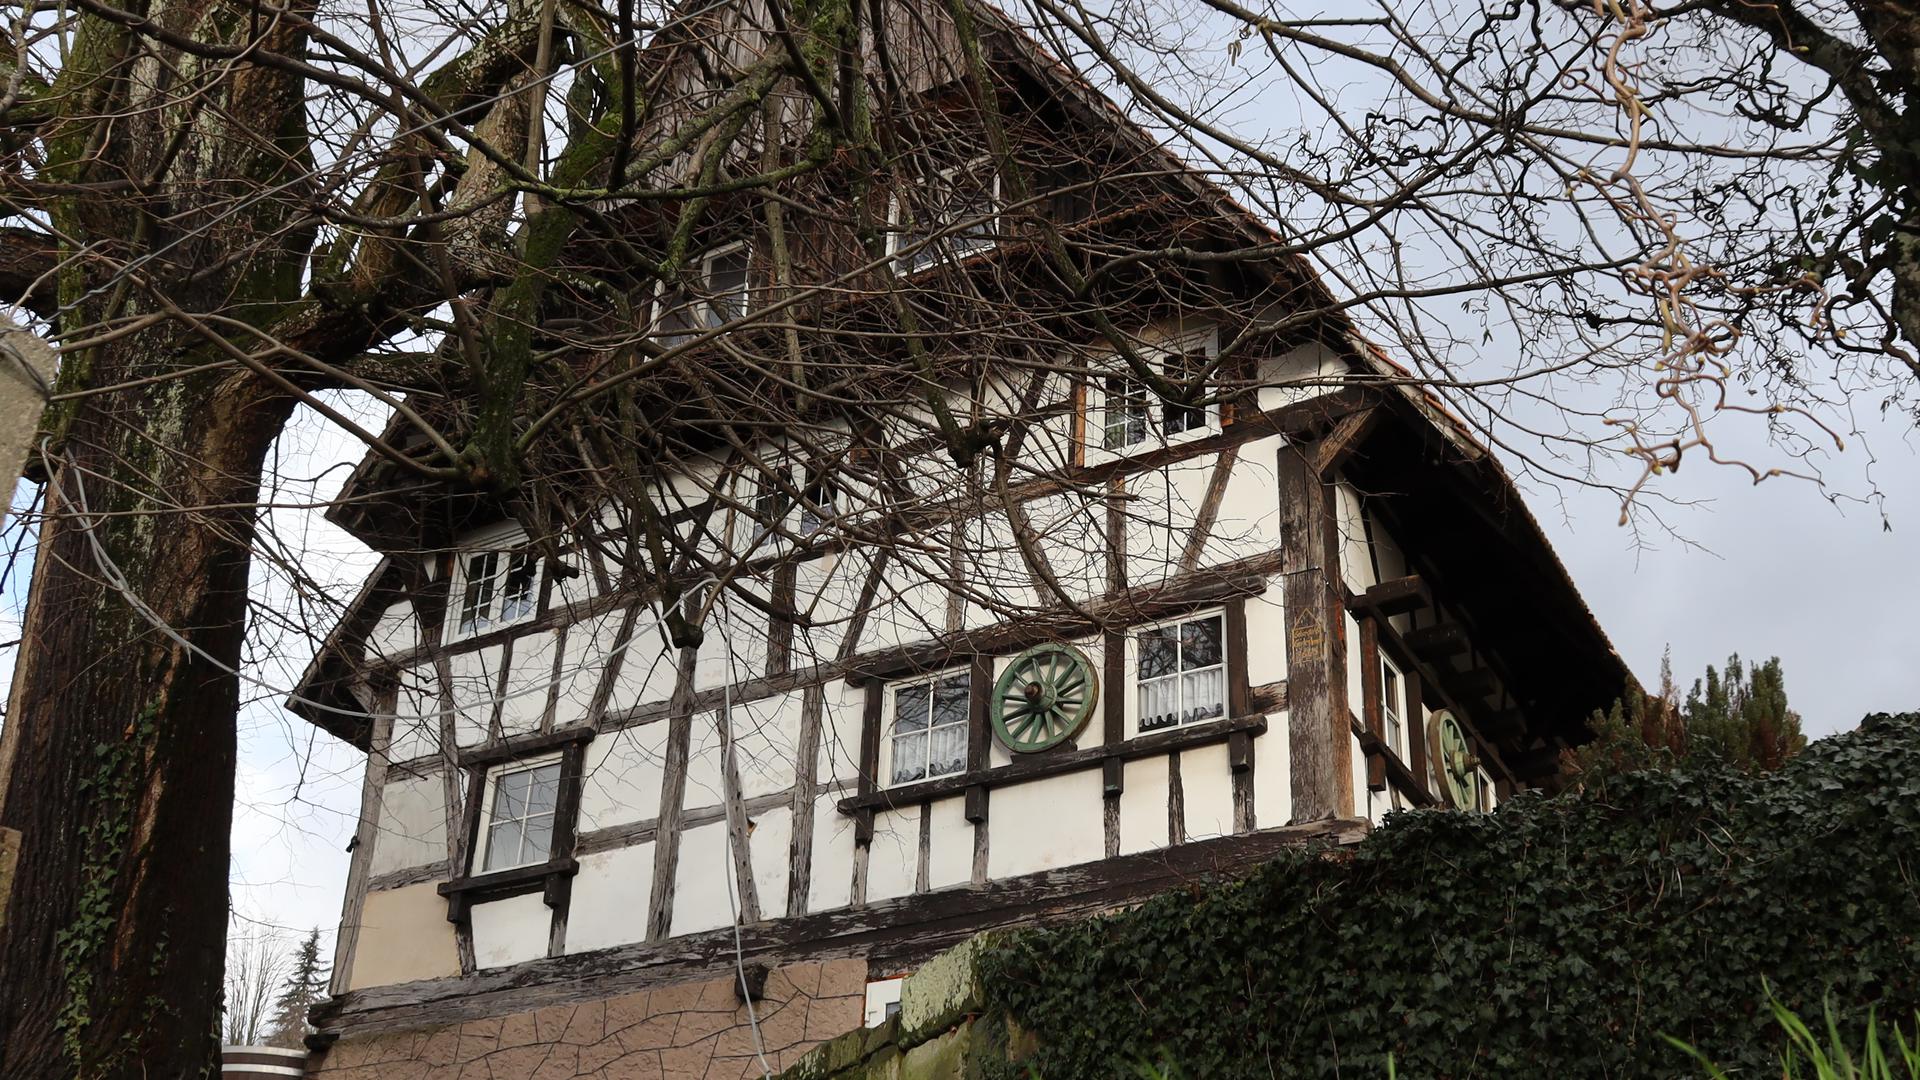 Häuser Serie - Das älteste Fachwerkhaus in Sasbachwalden aus dem Jahre 1665